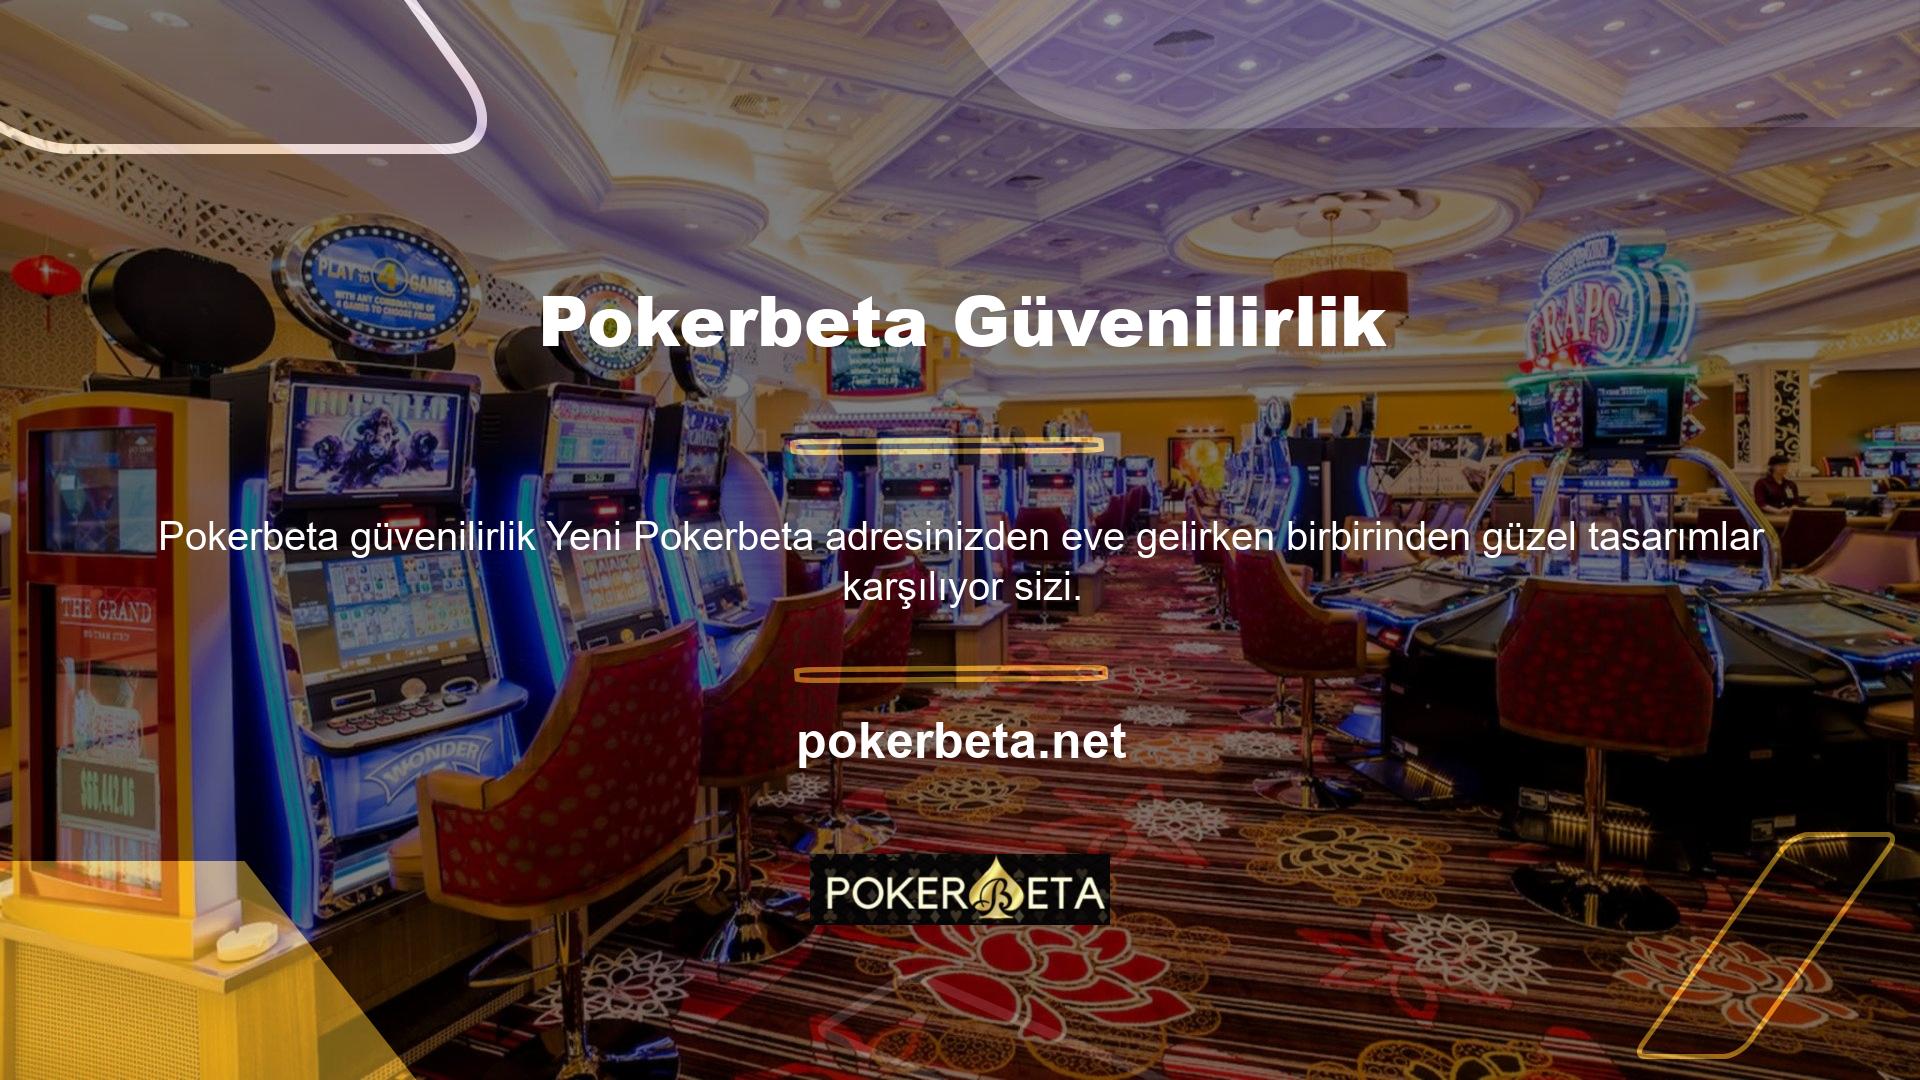 Pokerbeta, tema, çizgiler ve grafikler açısından kullanım kolaylığı açısından en iyi çevrimiçi casino sitelerinden biridir